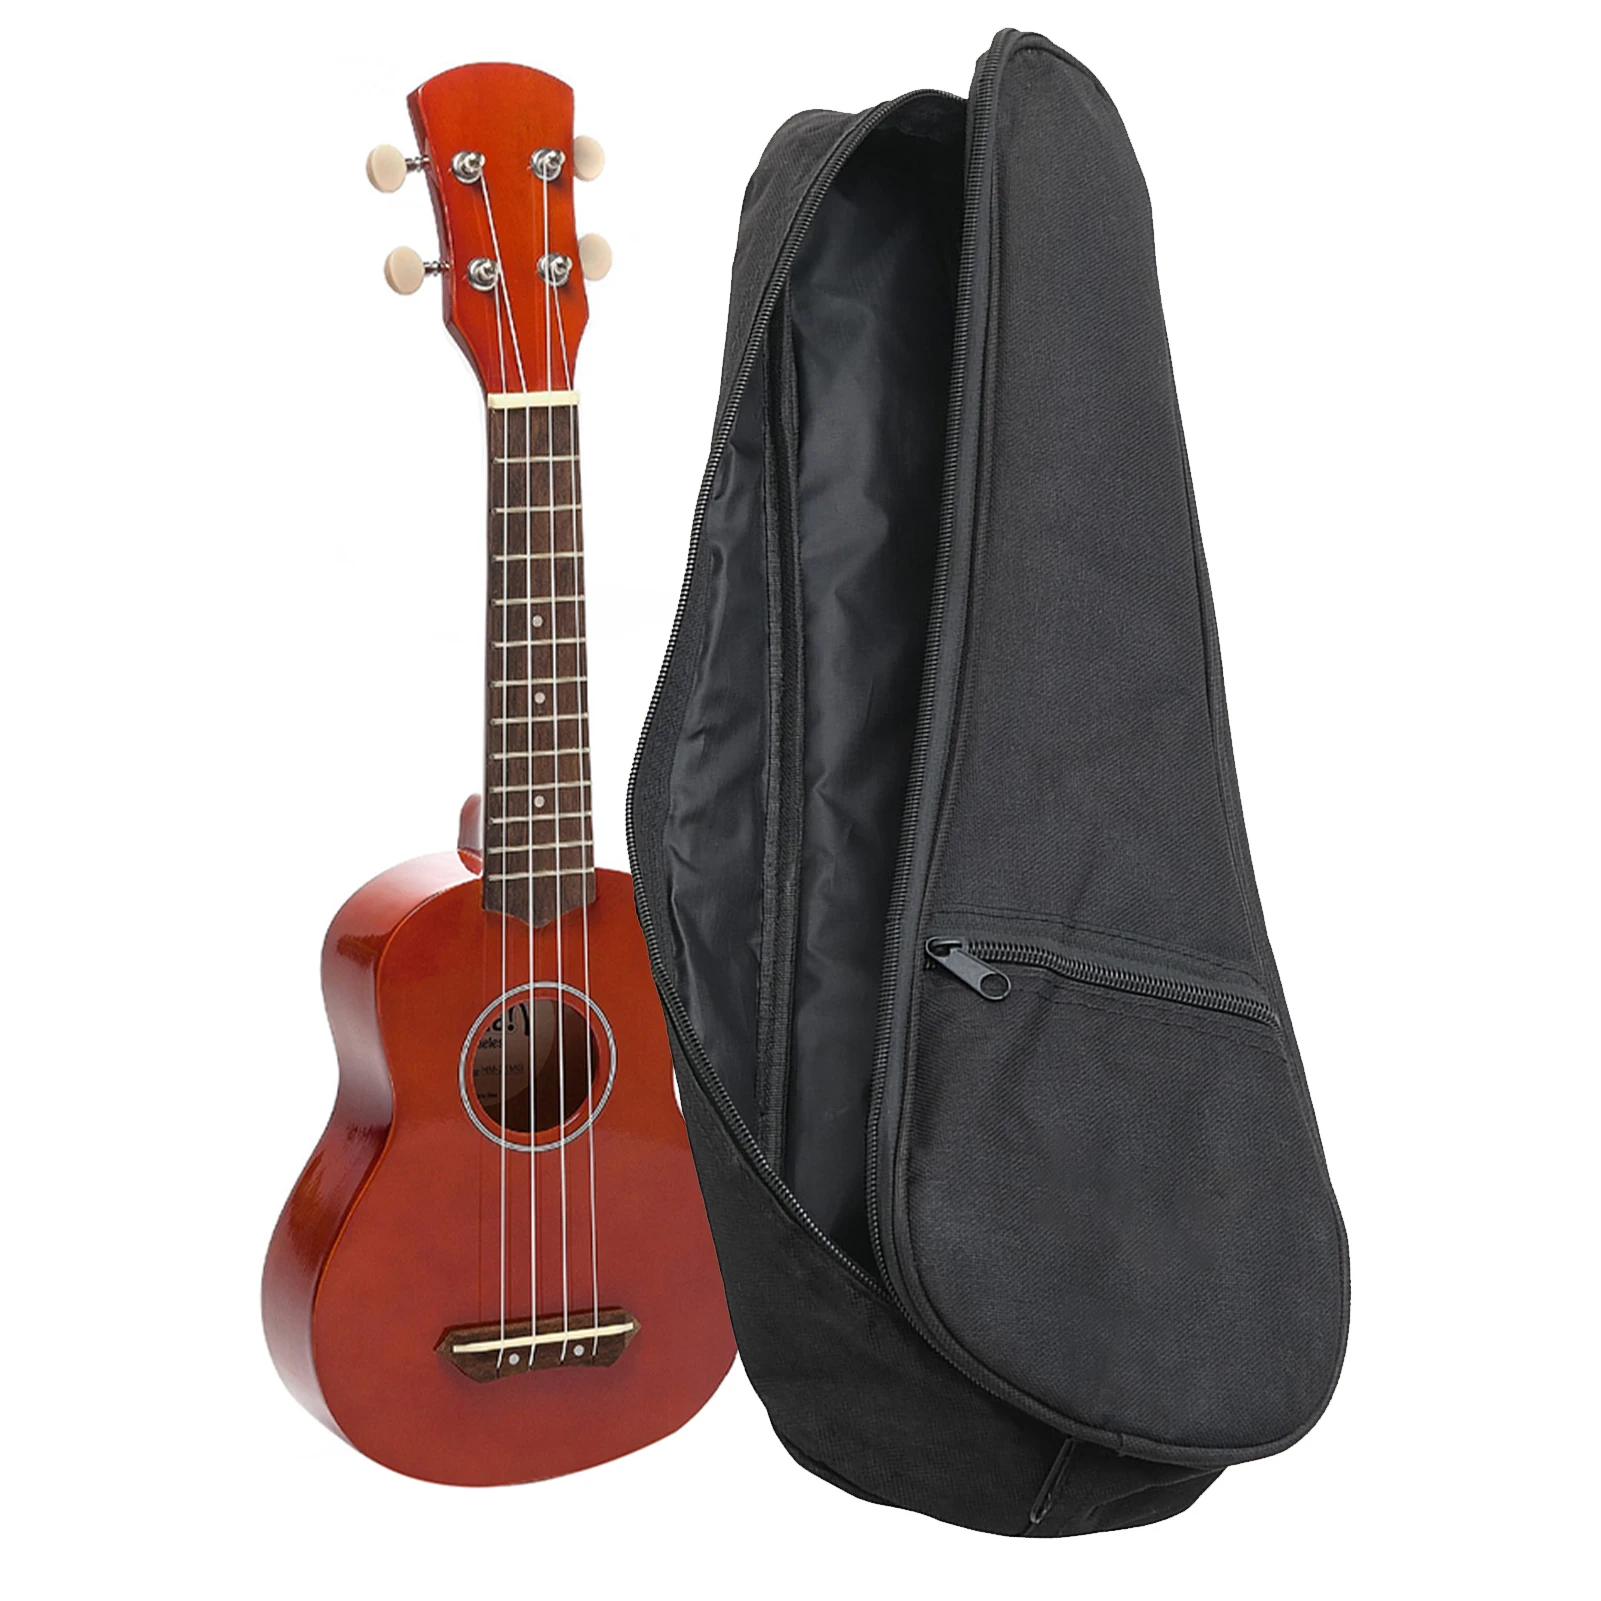 

Bag For Ukulele Thicken Electric Mni Guitar Case Built-in Sponge Liner 18in Gig Case Shockproof Scratch-Resistant Wear Resistant